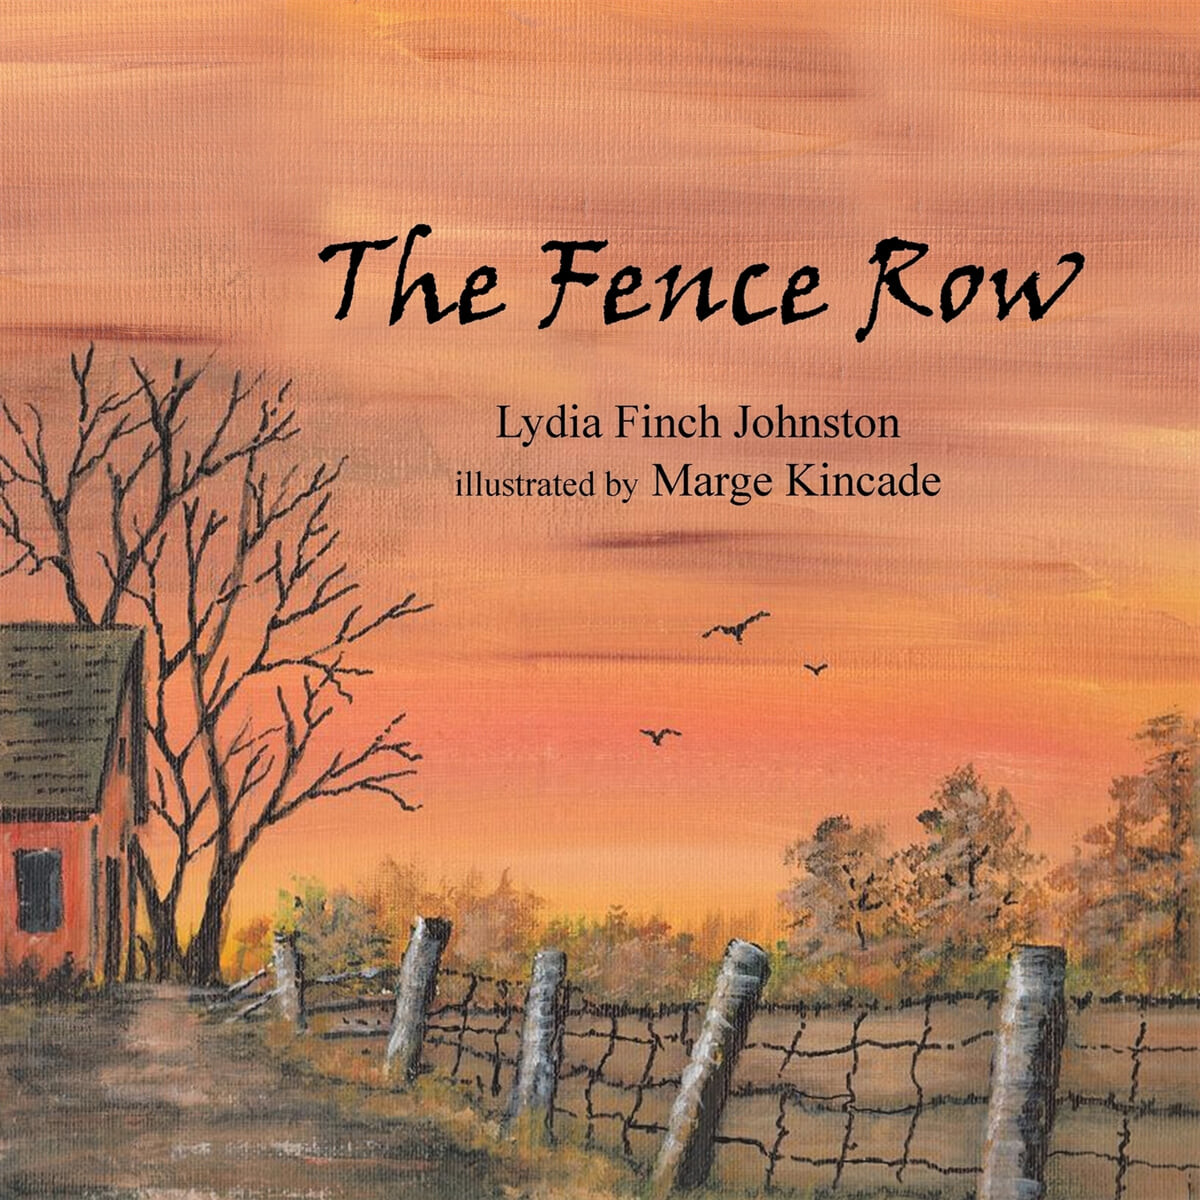 The Fence Row